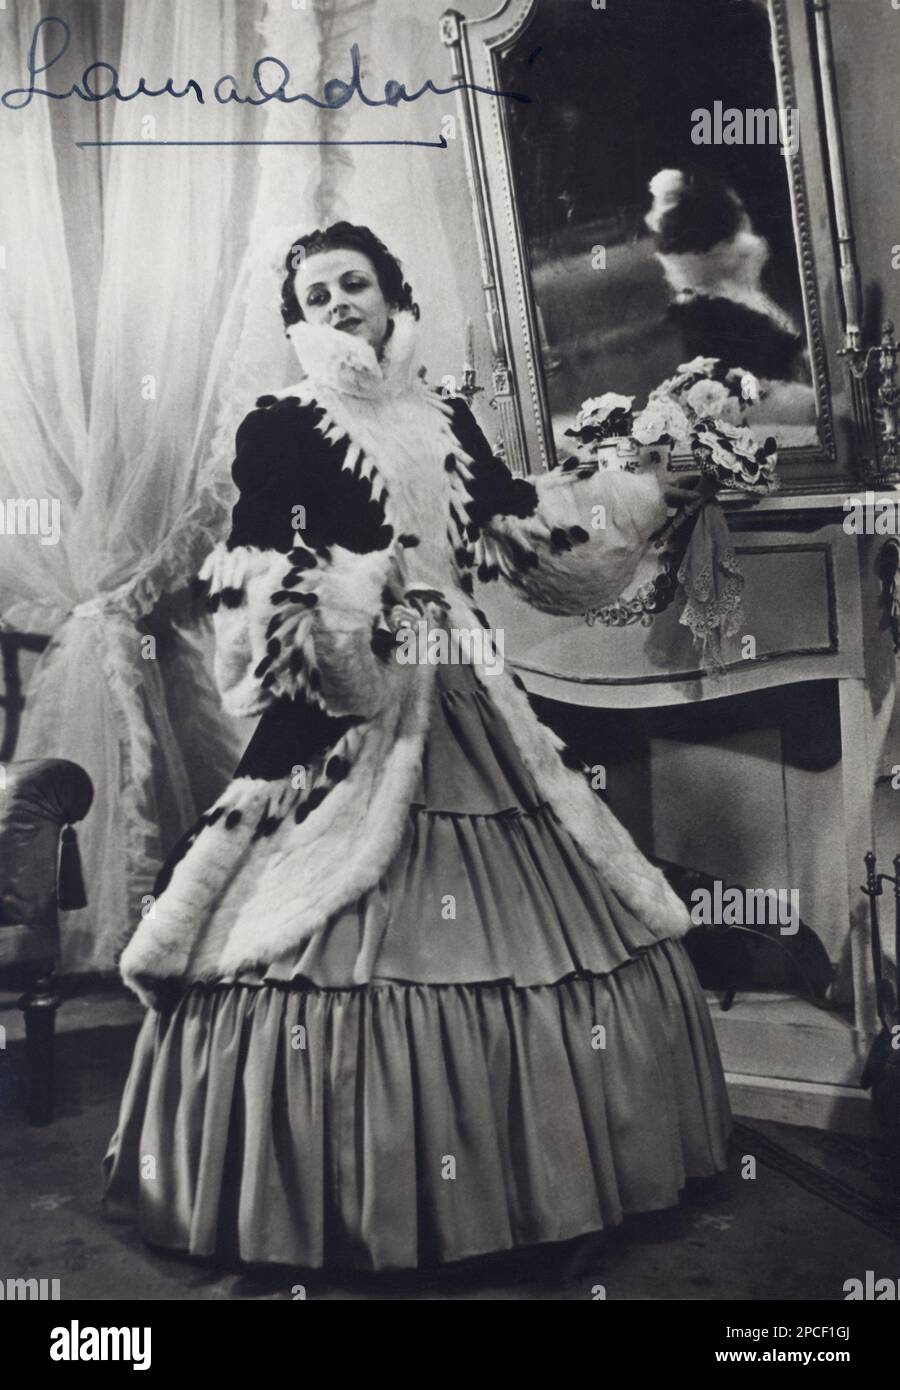 1948 Ca : die italienische Theaterdarstellerin LAURA ADANI ( 1913 - 1996 ) in der Rolle VON LA DAME AUX CAMELIAS ( Margherita Gauthier - LA SIGNORA DELLE CAMELIE ) von Dumas . Die Kurtisane MARIE DUPLESSIS , geboren als Alphonsine Rose Plessis und nach Comtesse de Perregaux ( Nonant-le-Pin 1824 - Paris 1847 ) , war das Vorbild des Schriftstellers ALEXANDRE DUMAS Fils ( 1824 - 1895 ) für die Rolle von Marguerite Gautier und feierte den Roman " La dame aux camelias " ( Camille oder die Frau der Camellias, La Signora dalle camelie , 1848) und nach dem Meisterwerk der Oper LA TRAVIATA ( 1853 ) von Giuseppe VERDI mit dem Protag Stockfoto